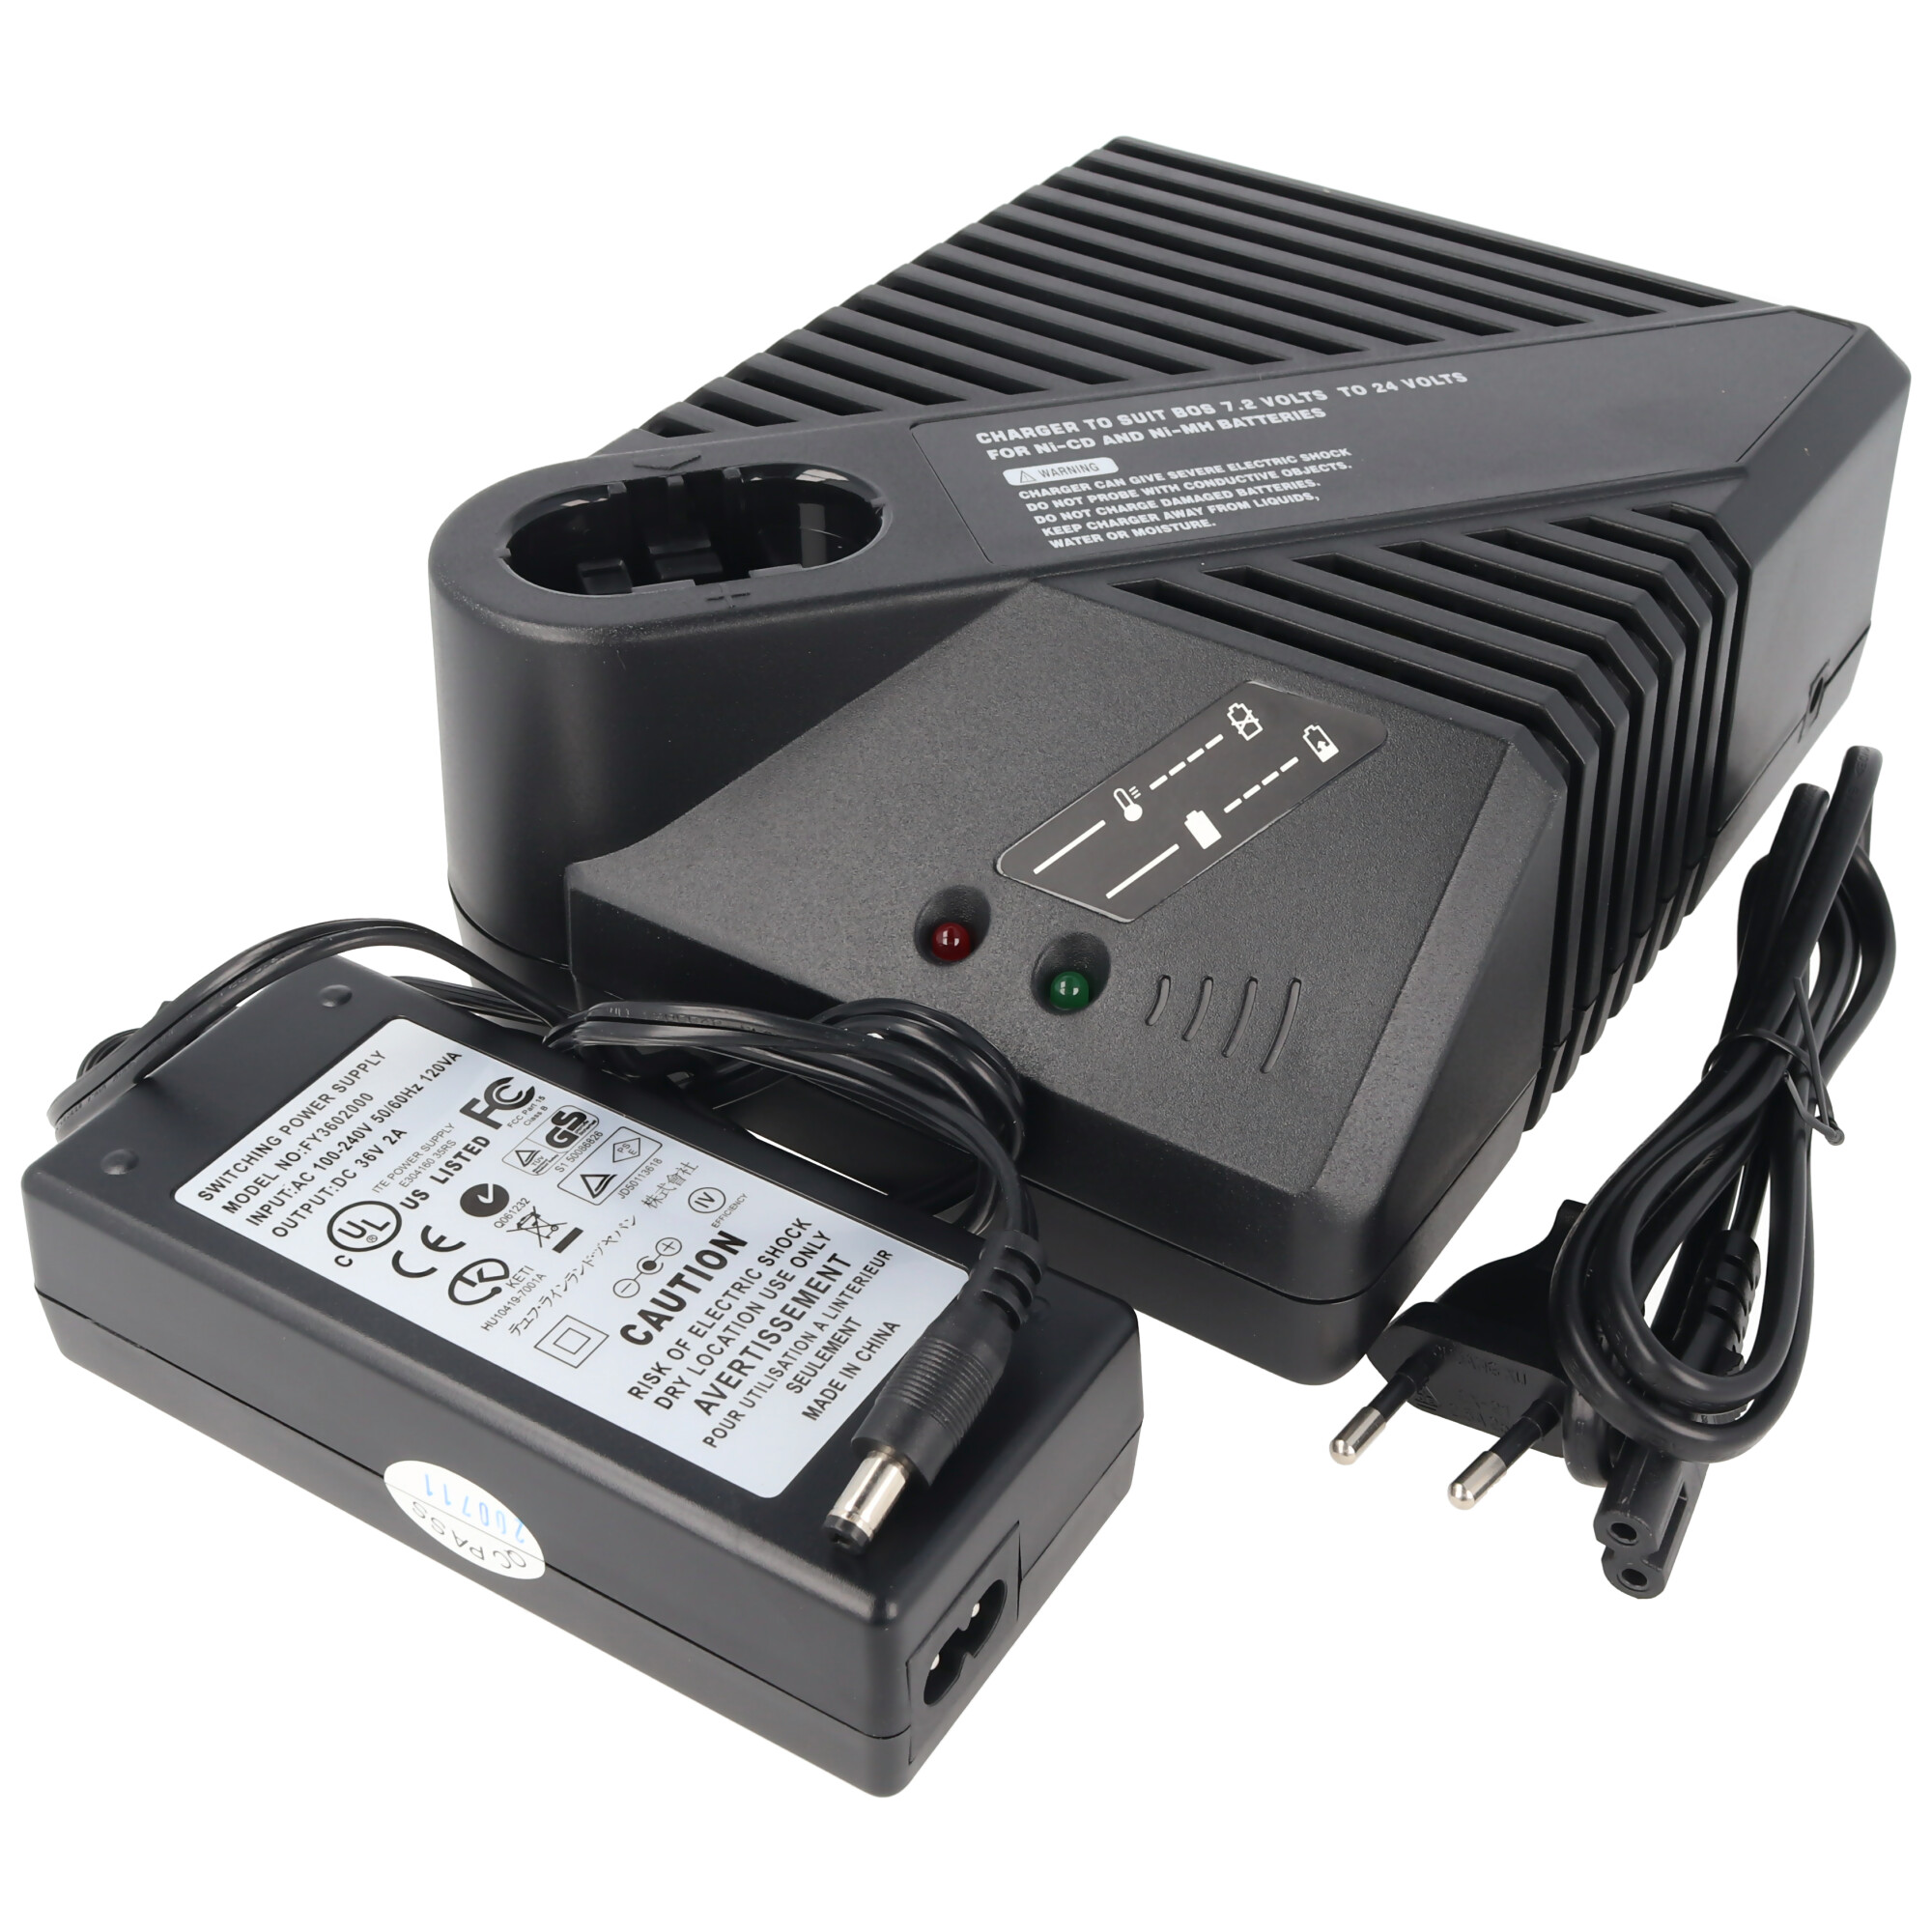 Pack Extérieur Bosch Professional GRL 500H LR50, 4 batteries, chargeur avec adaptateur, BT 170, GR 240 